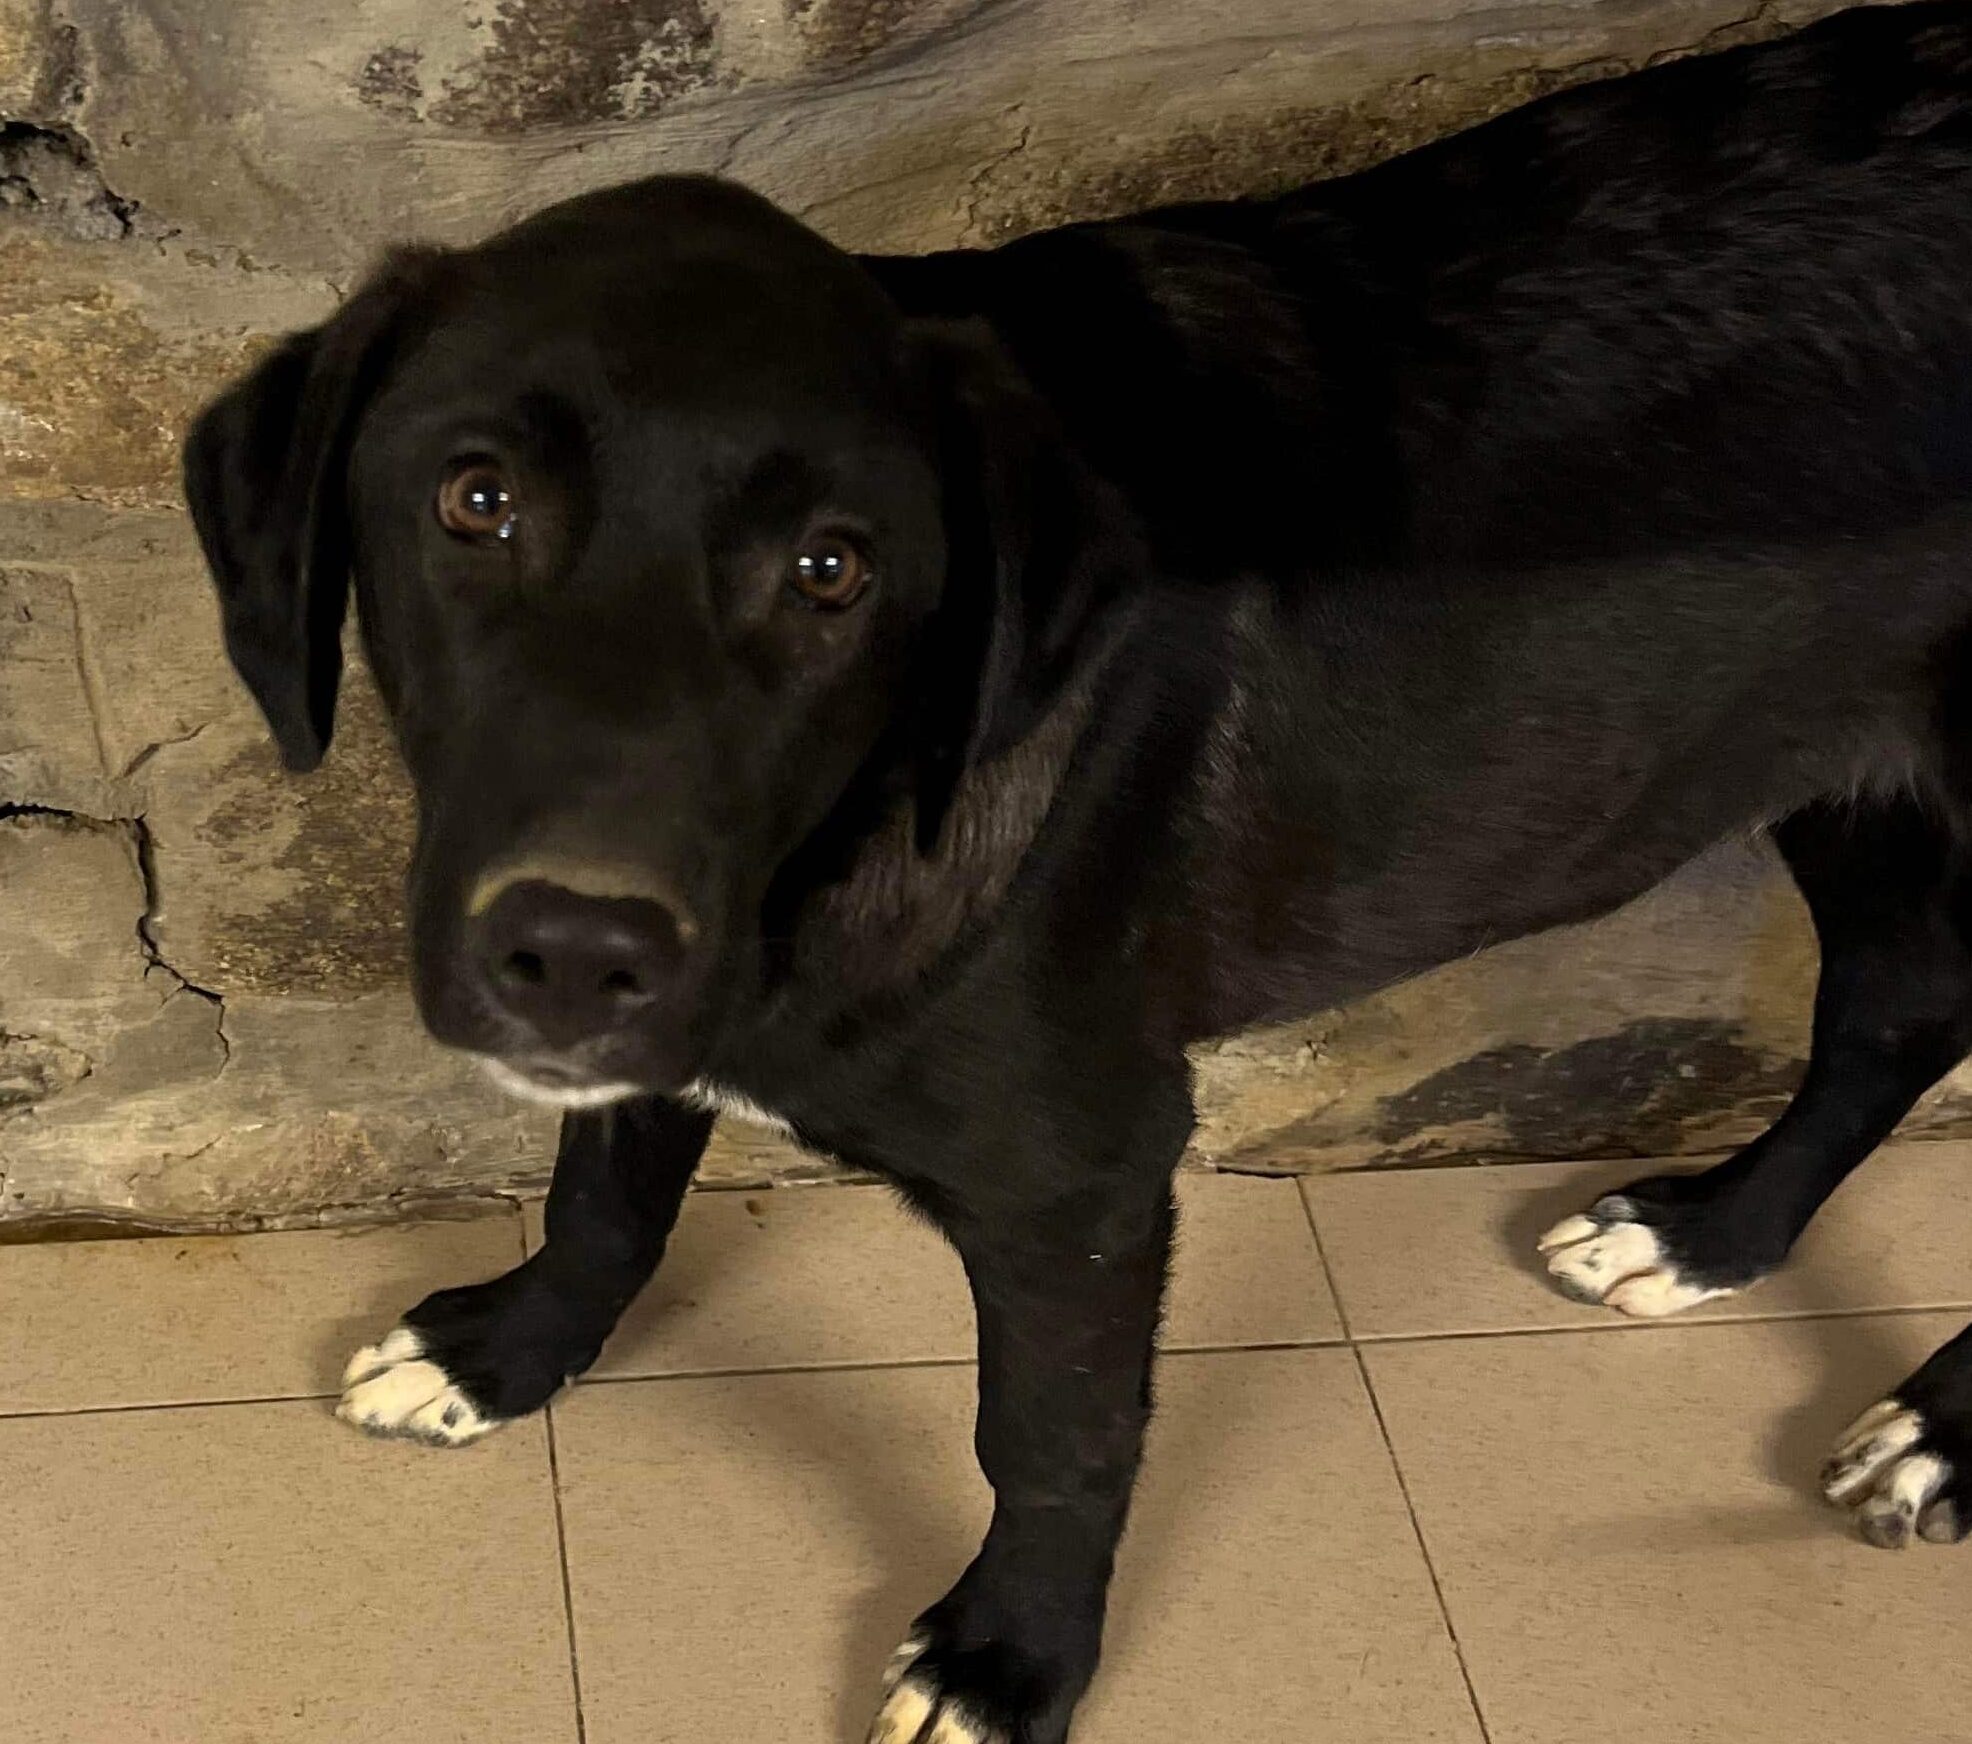 Fero - Hundevermittlung und Adoption aus Rumänien